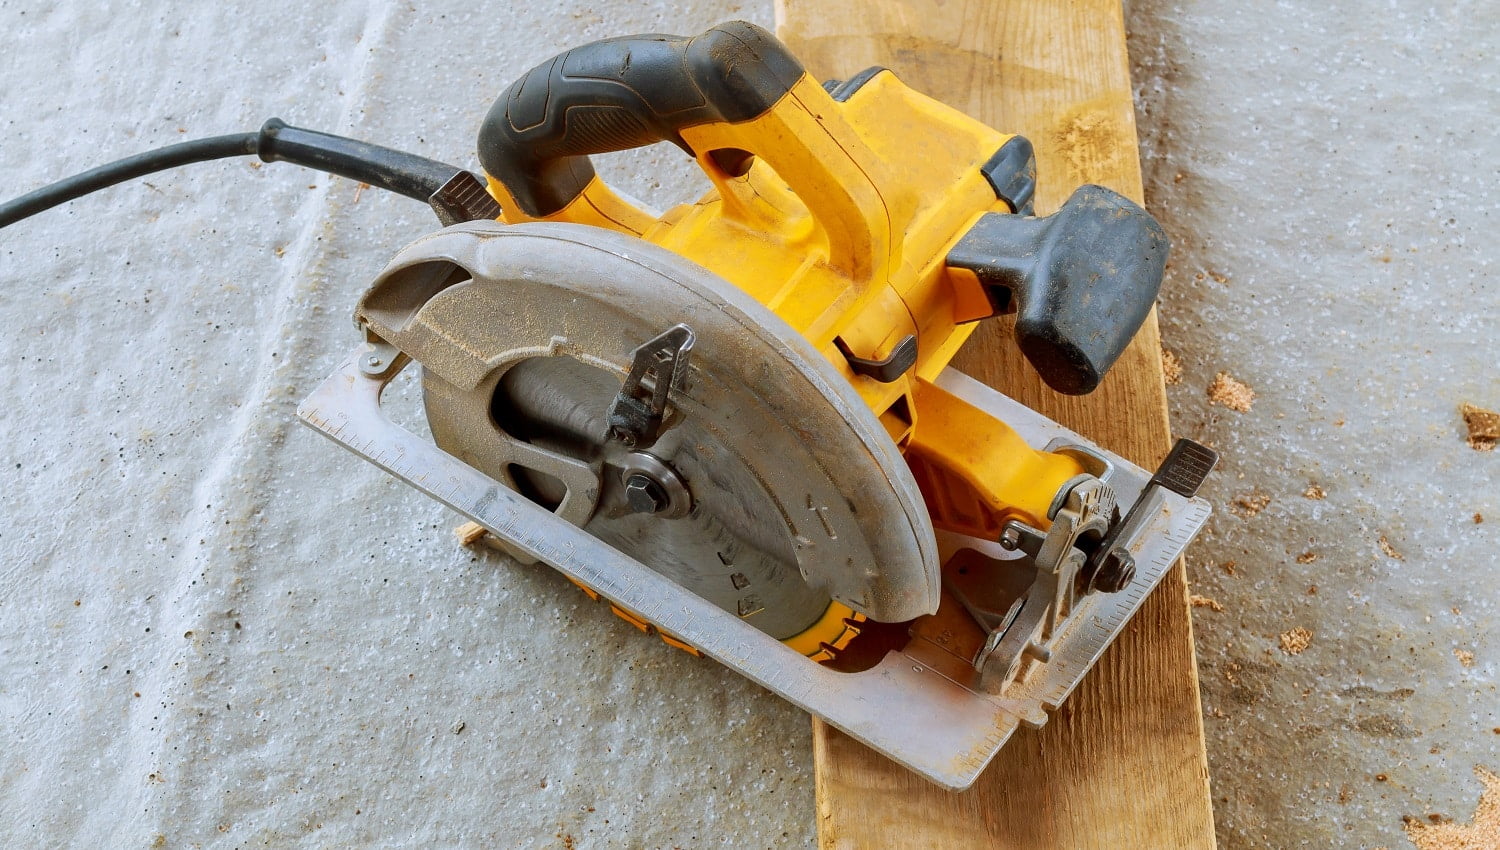 Close up electric circular saw cutting wood Wood cutting with circular saw